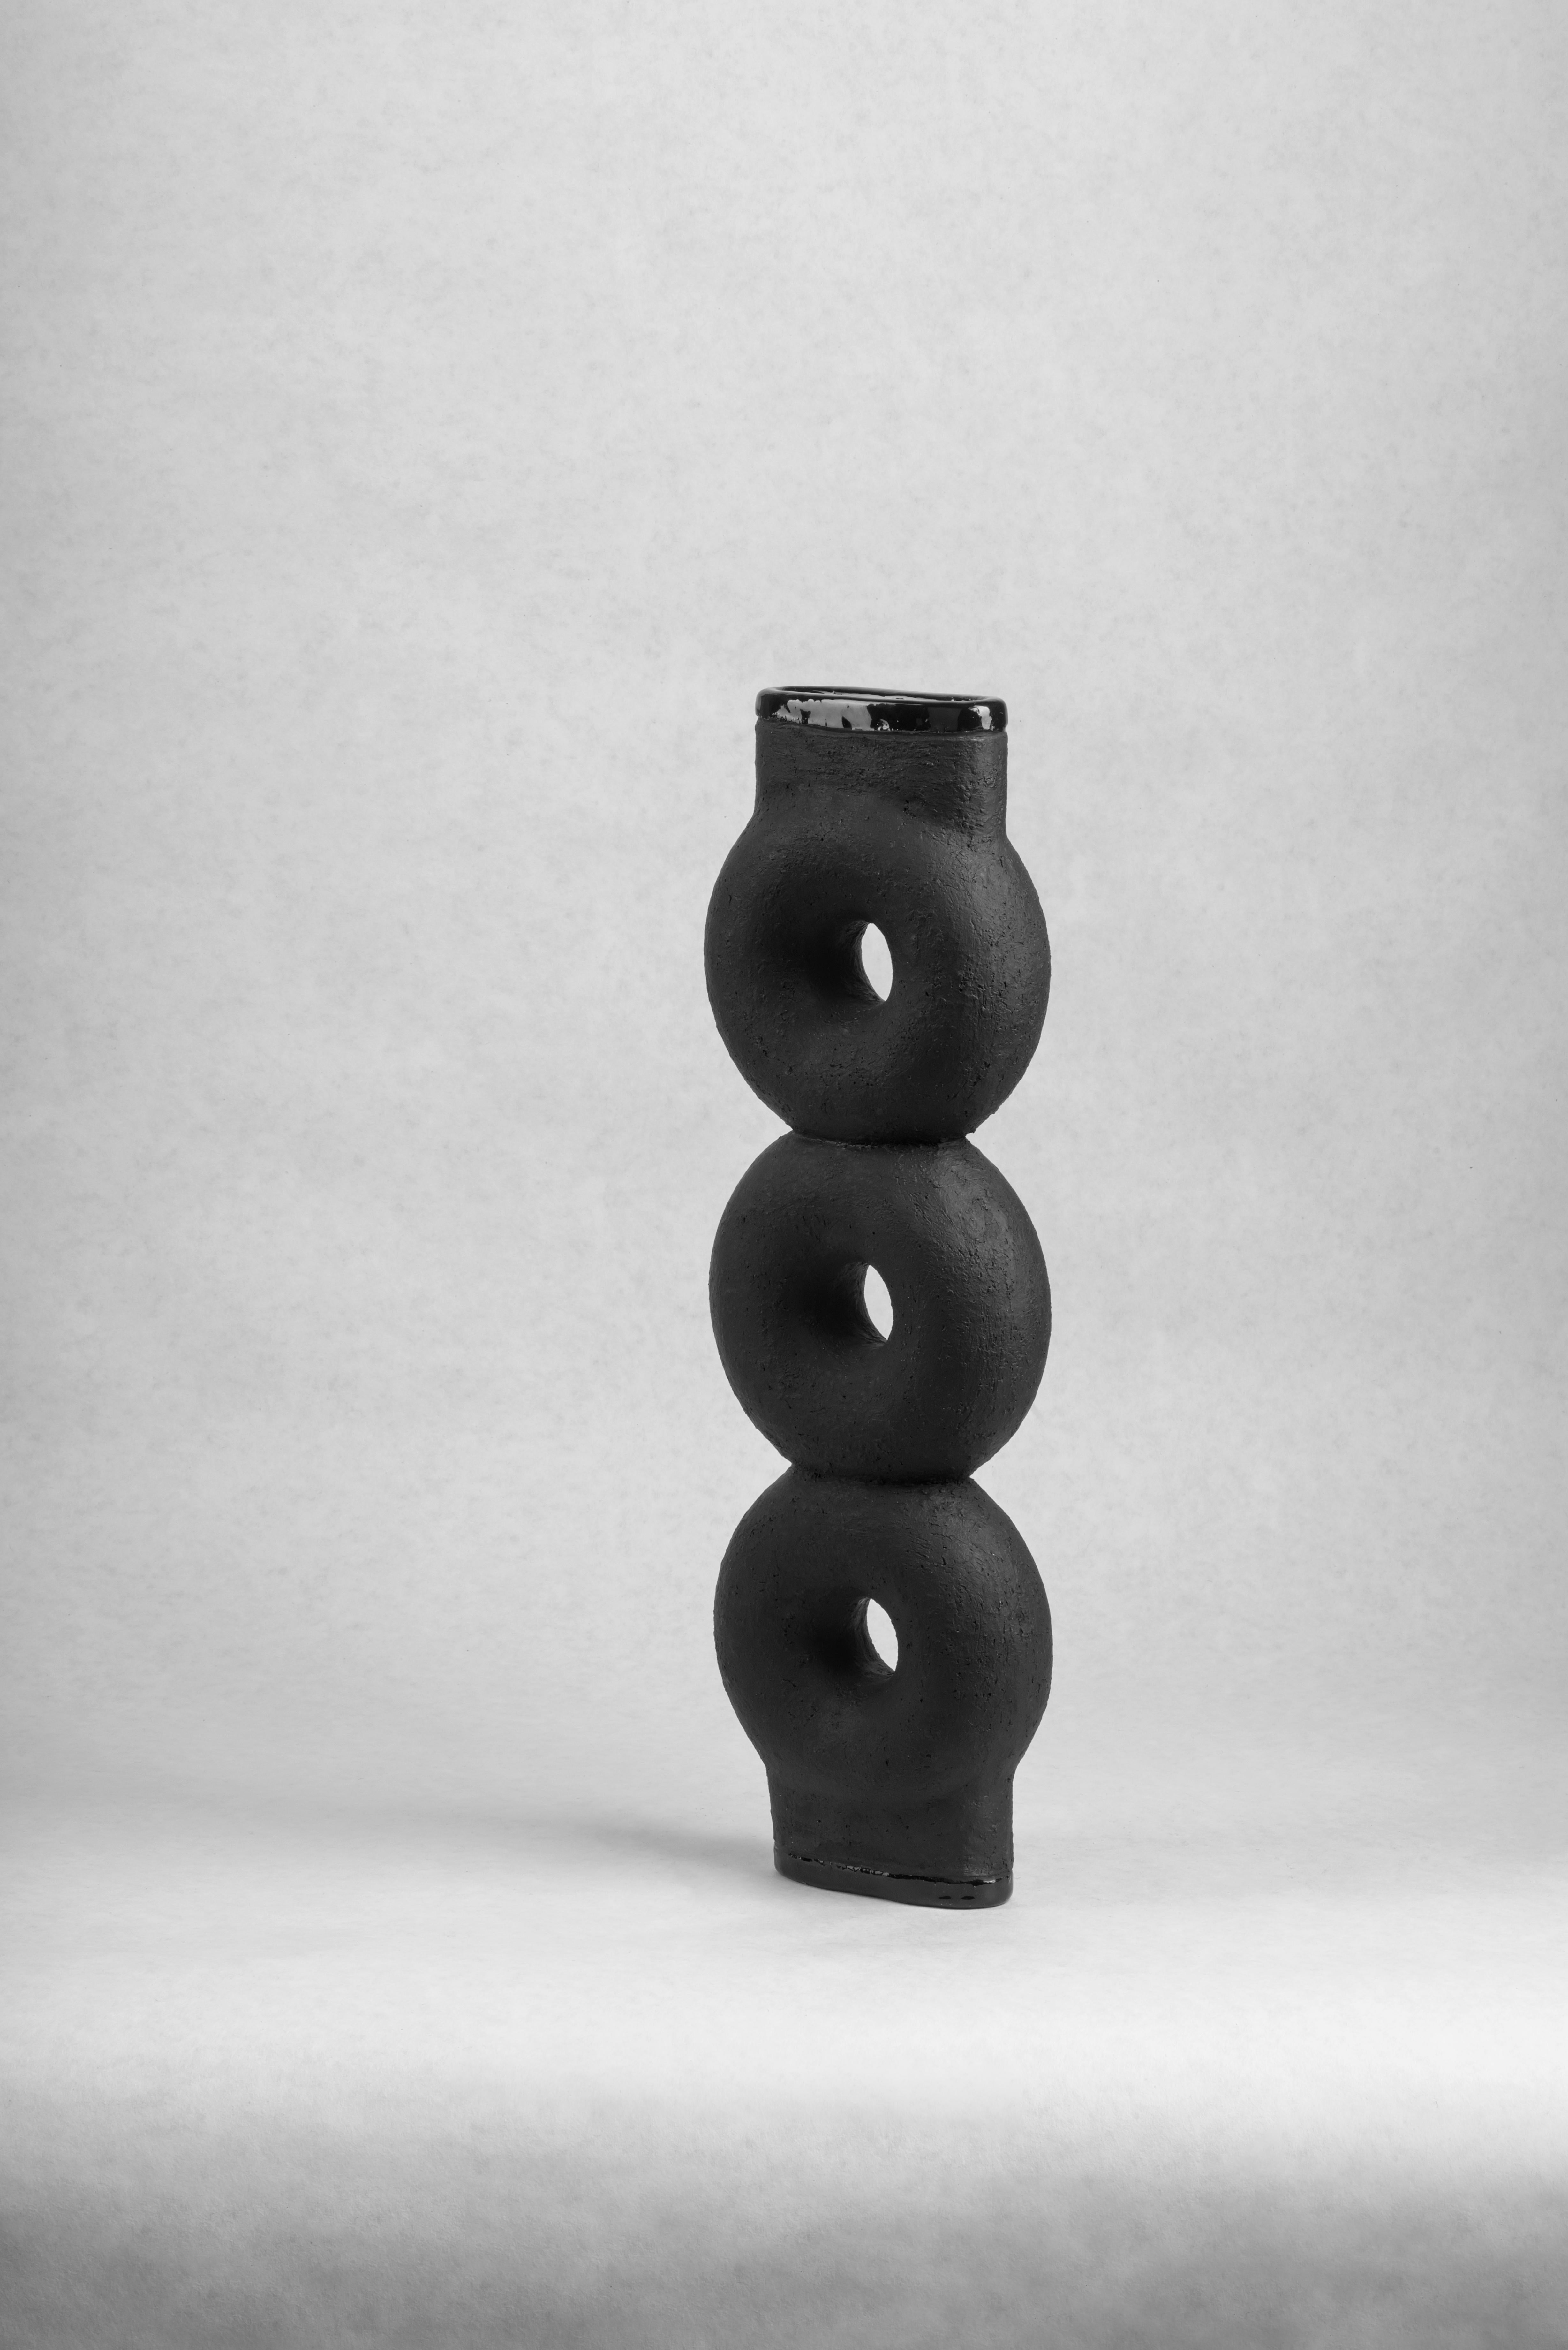 Paar skulptierte Keramikvasen von FAINA
Entwurf: Victoriya Yakusha
MATERIAL: MATERIAL: Ton/Keramik
Abmessungen: 14 x 5 x H 43,5 cm


Die Vase ist Teil einer Serie von 5 Vasen, der Satz von Vasen besteht aus:

1. Vase auf drei Beinen Höhe 500 x